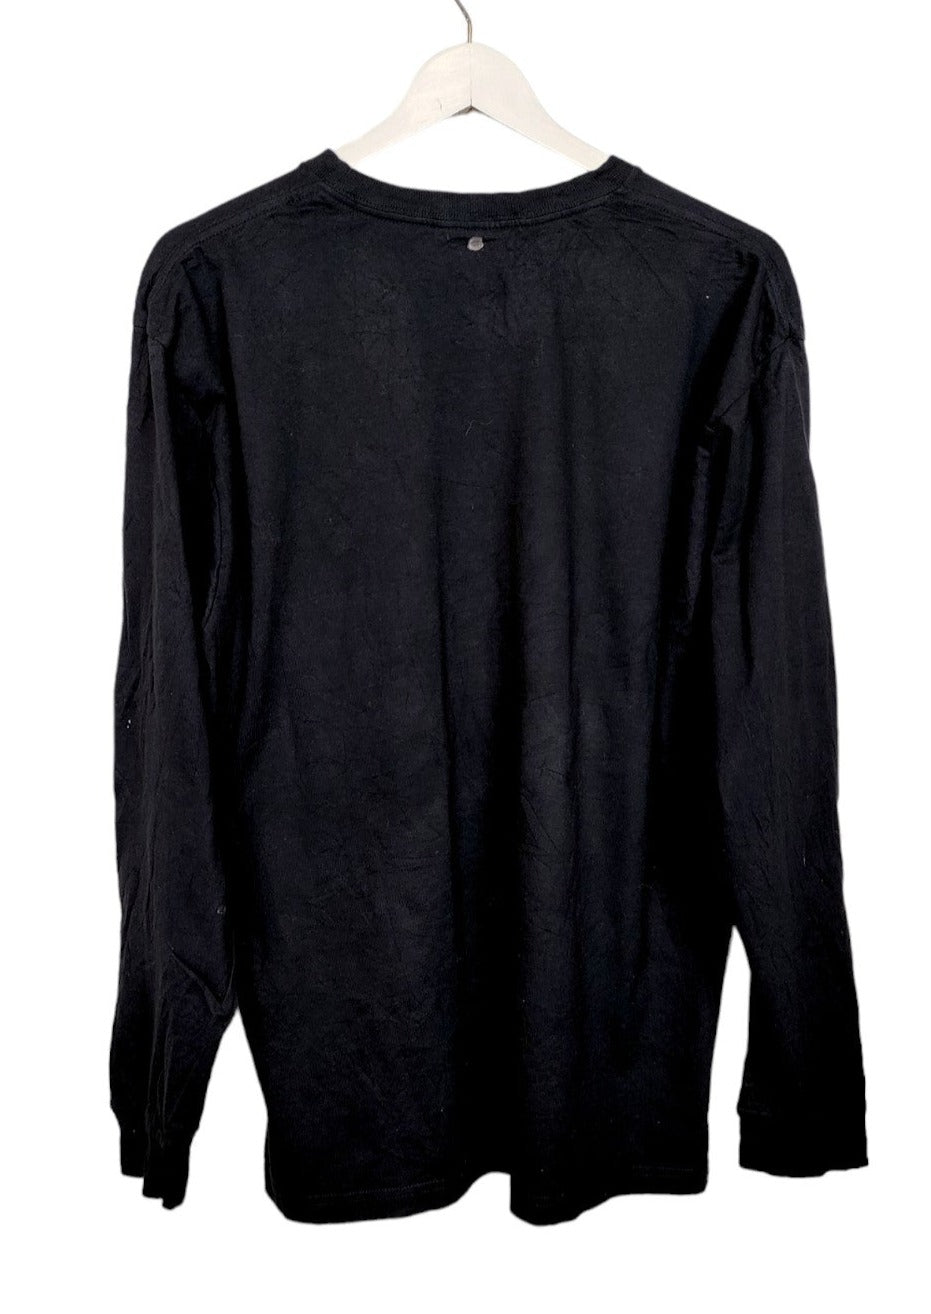 Ανδρική Μακό Μπλούζα CARHARTT σε Μαύρο χρώμα (Large)